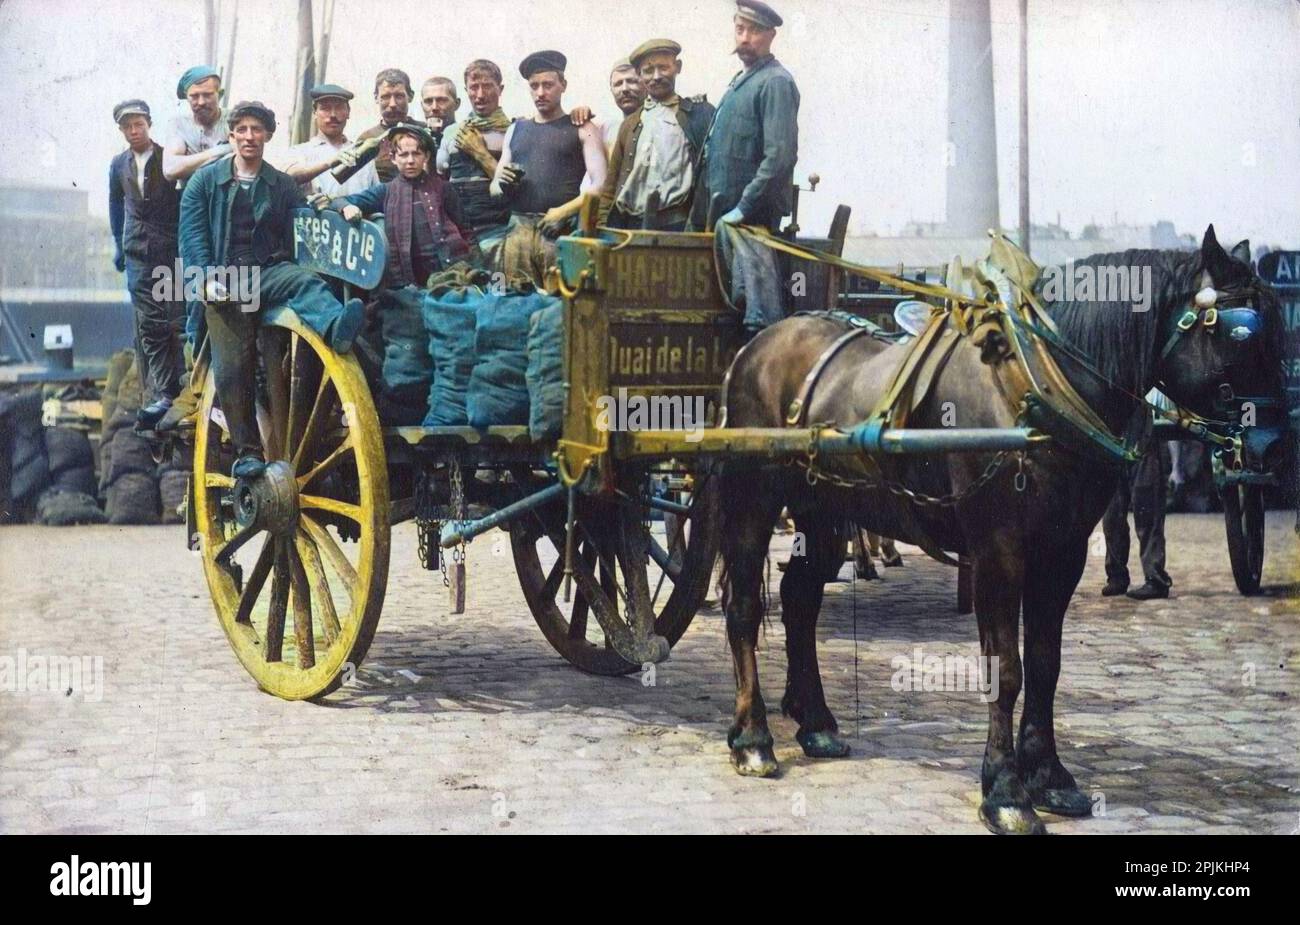 Les charbonniers sur une charrette de livraison des etablissements Chapuis, Quai de la Loire, Paris. Carte postale Debüt XXeme siecle. Stockfoto